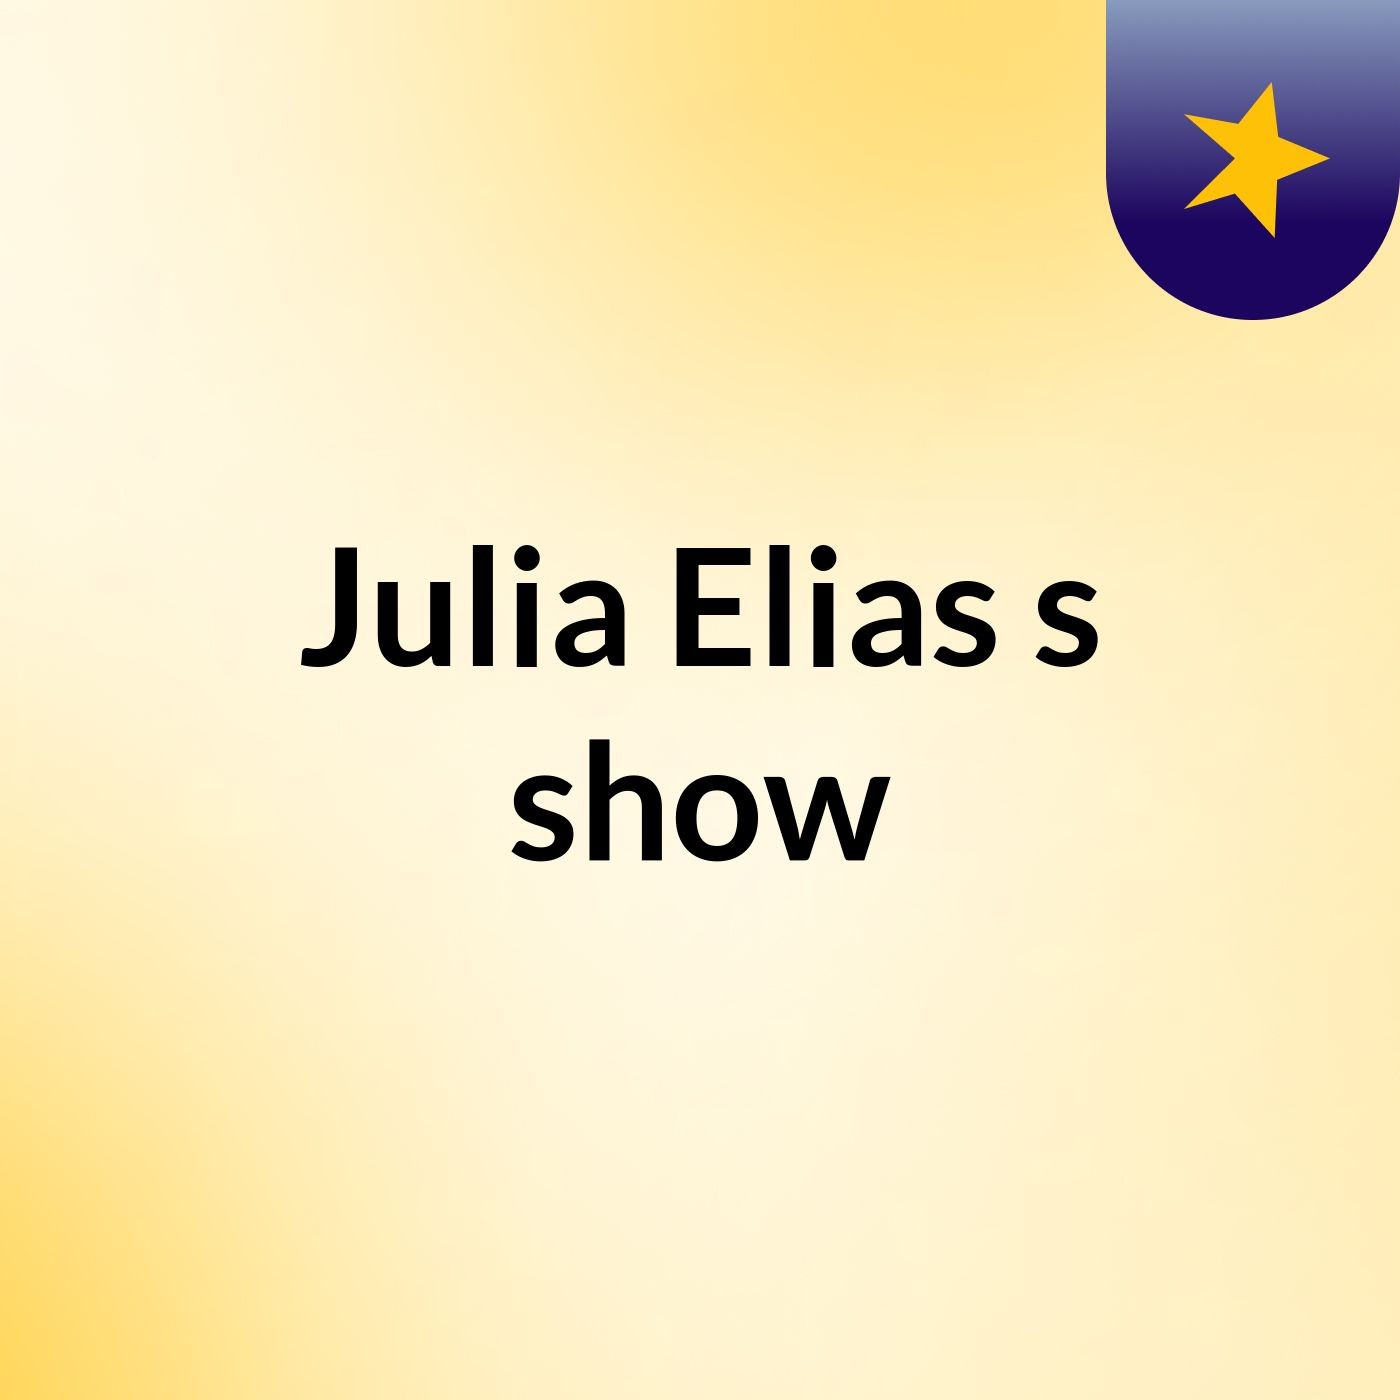 Julia Elias's show